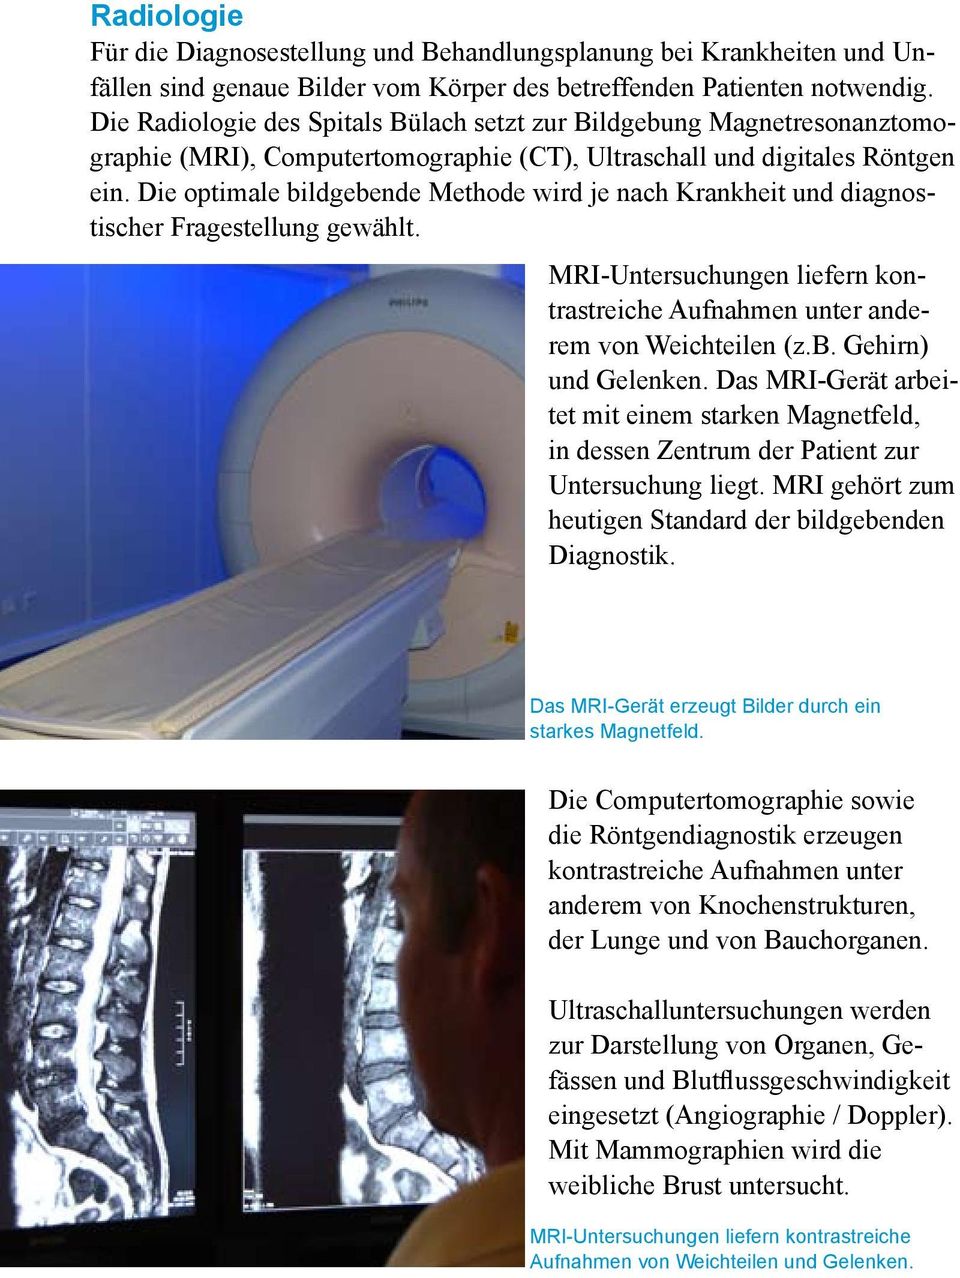 Die optimale bildgebende Methode wird je nach Krankheit und diagnostischer Fragestellung gewählt. MRI-Untersuchungen liefern kontrastreiche Aufnahmen unter anderem von Weichteilen (z.b. Gehirn) und Gelenken.